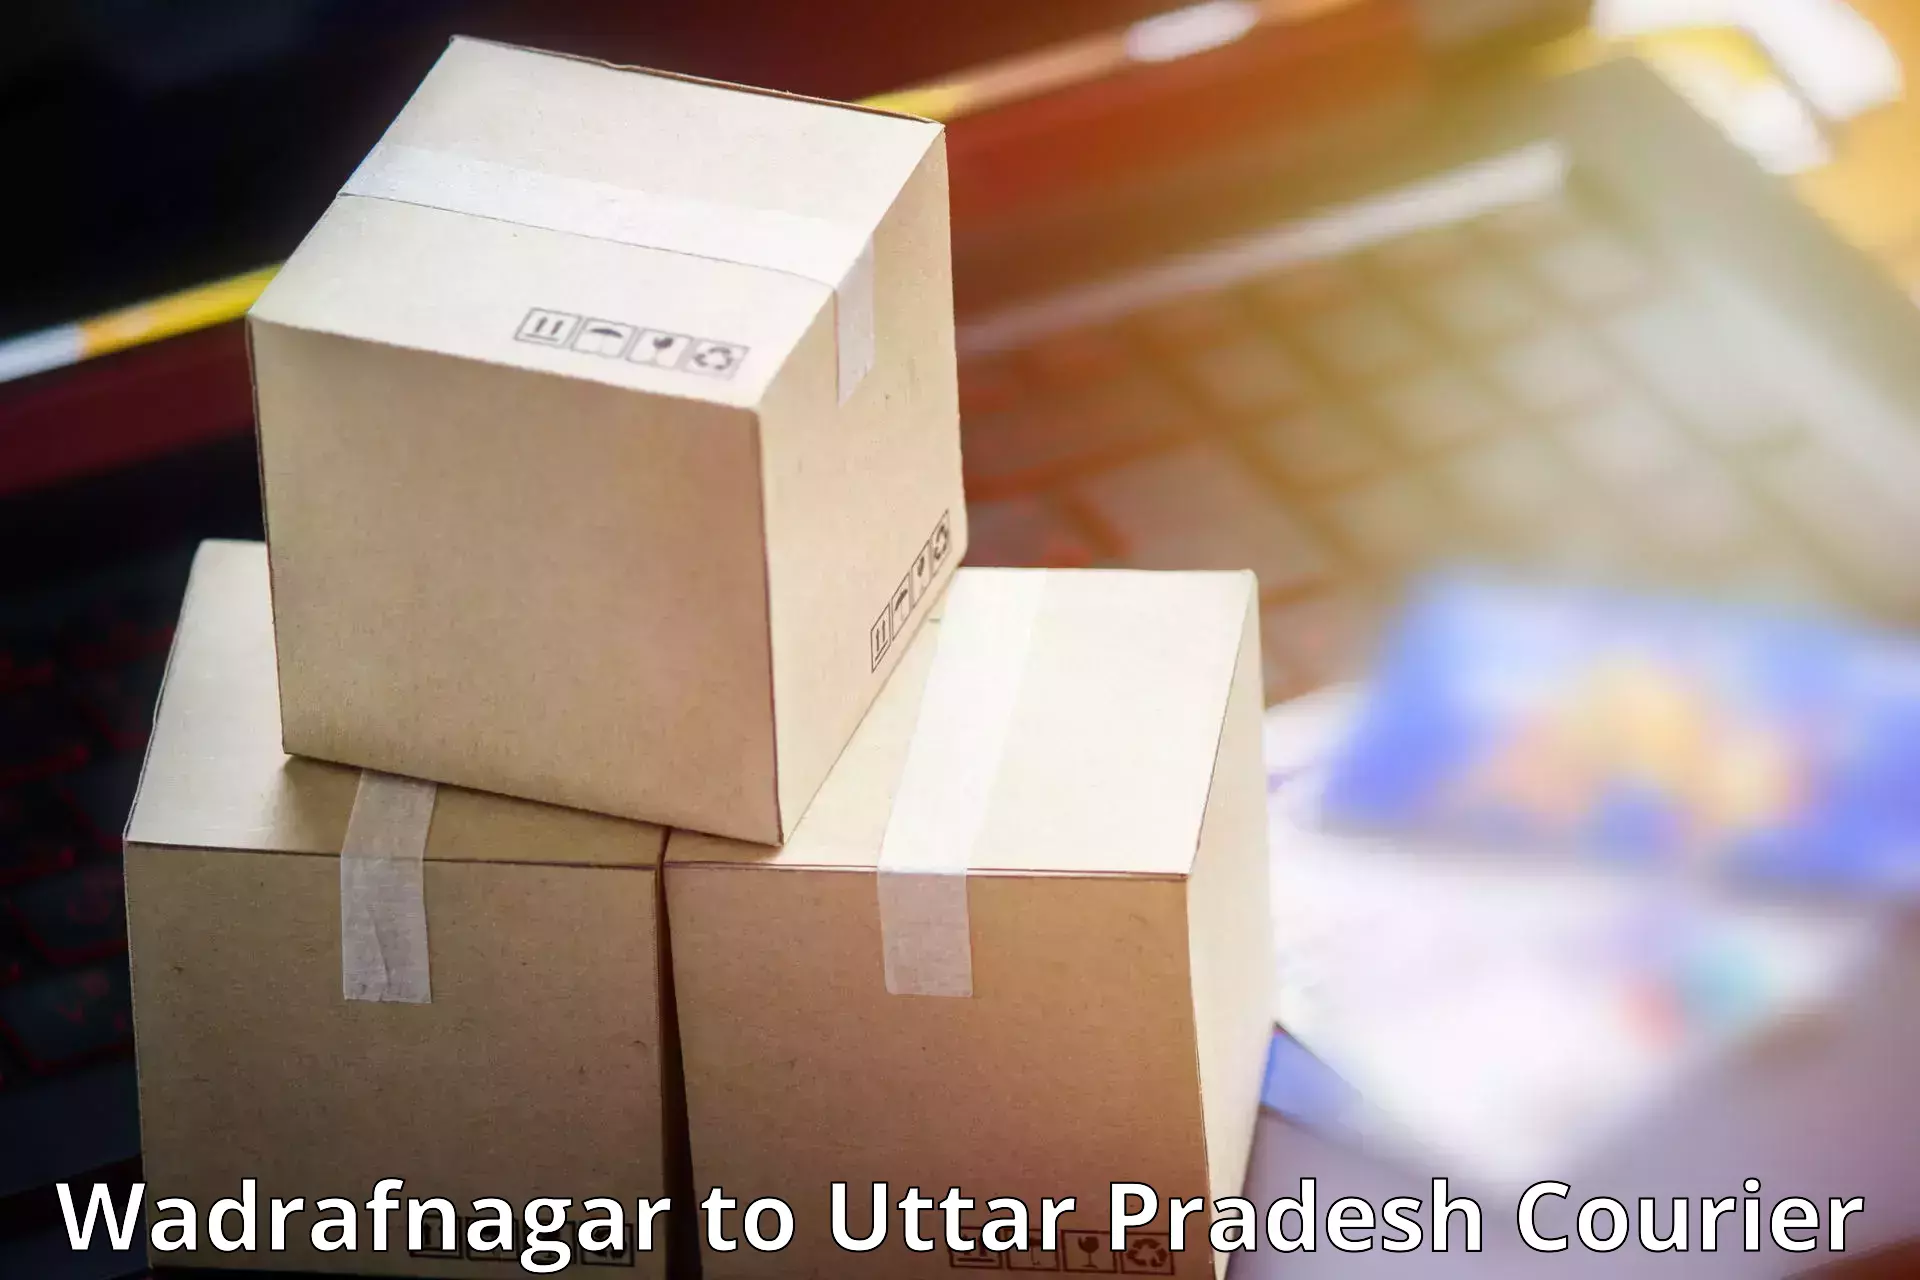 Trackable shipping service Wadrafnagar to Sahatwar